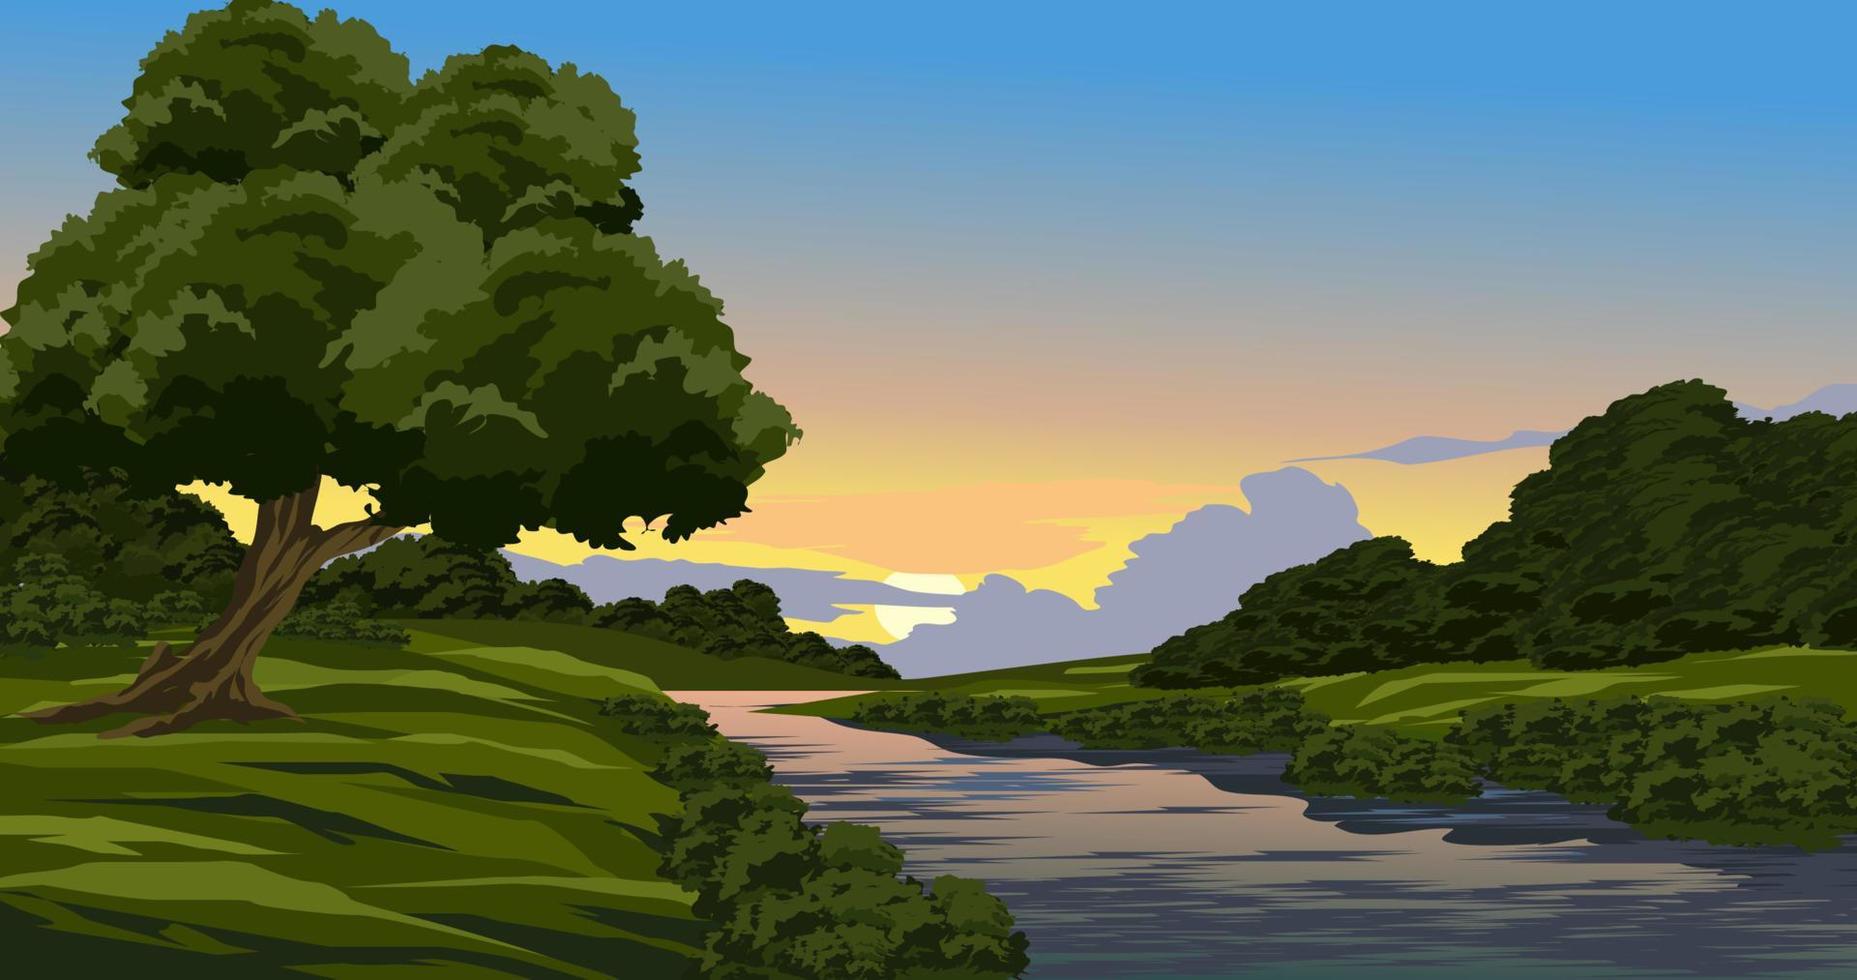 paisagem do sol na zona rural com rio. ilustração vetorial de cenário vetor